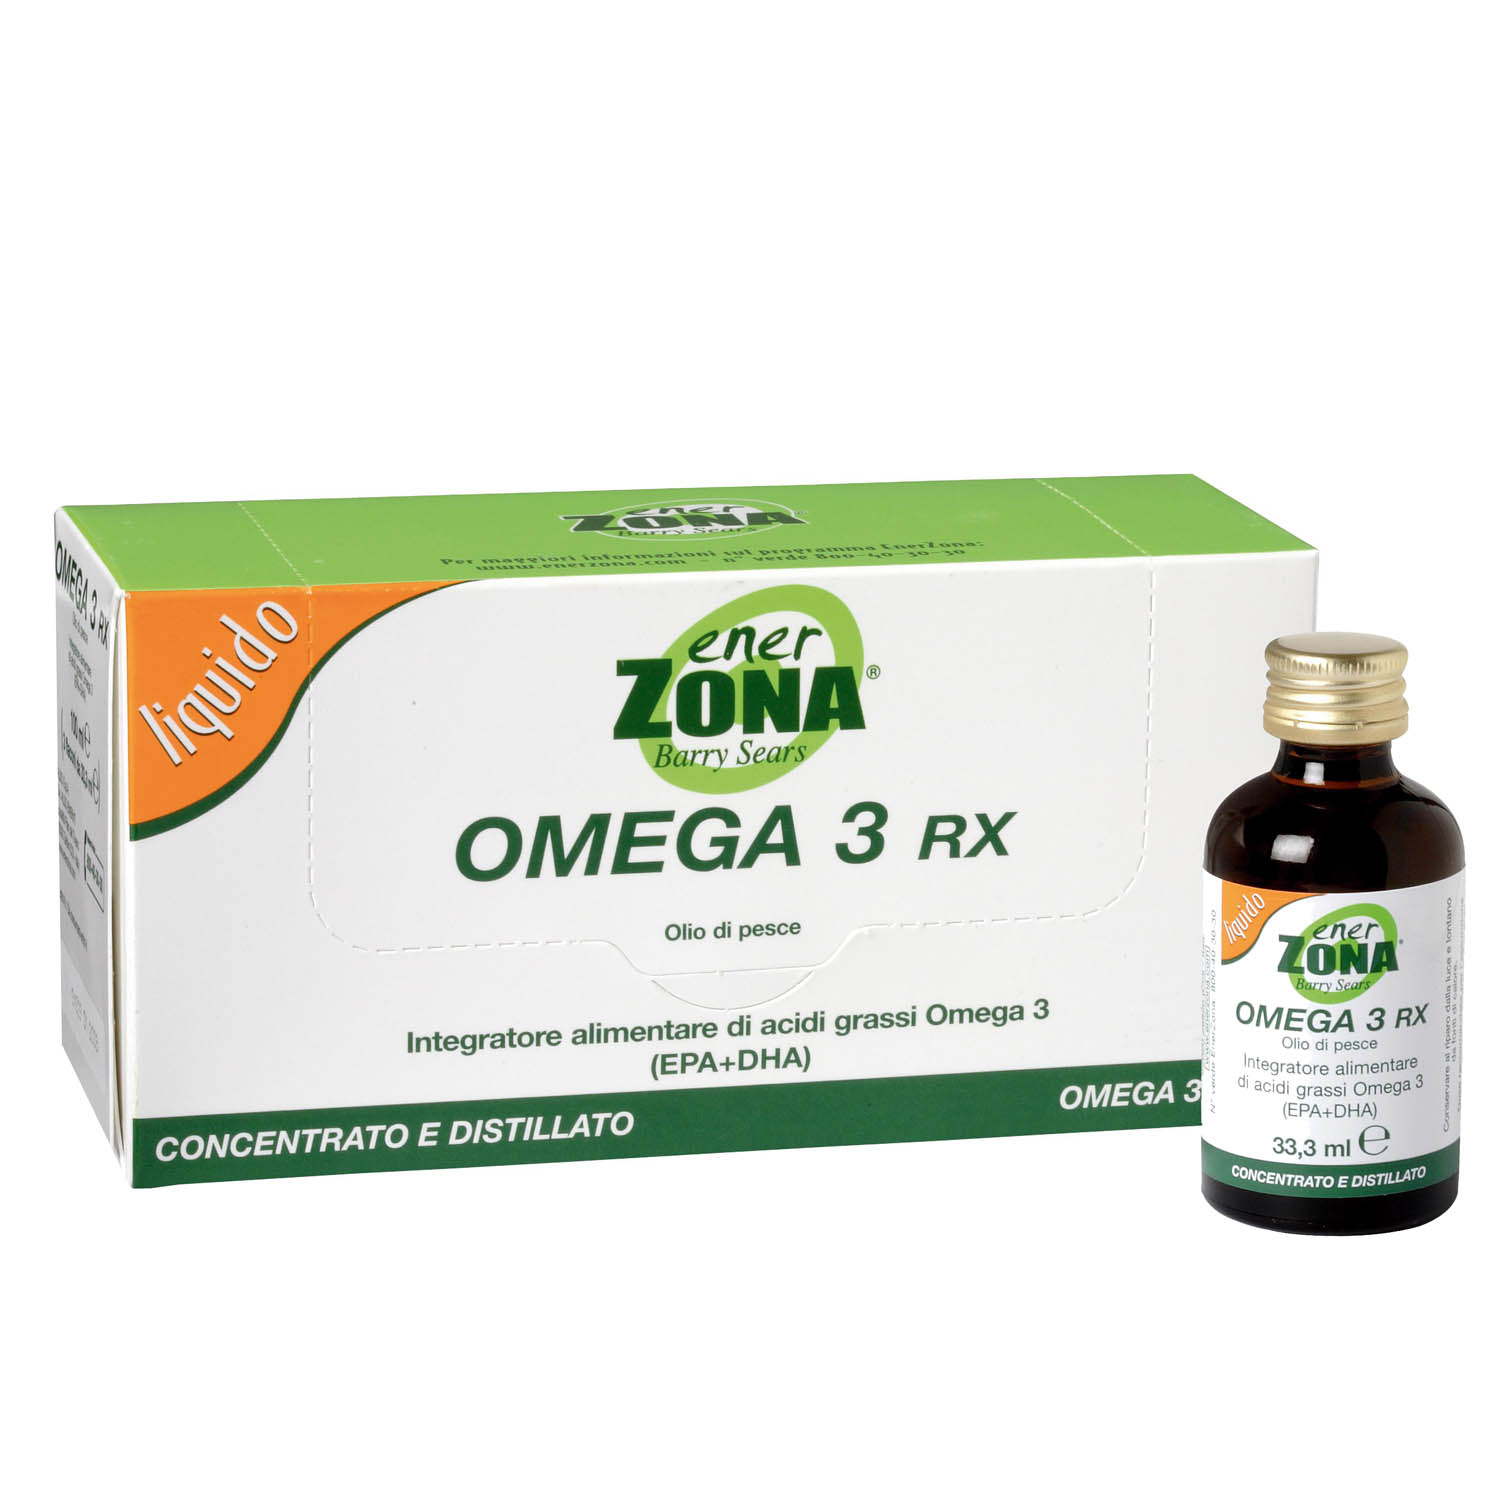 varicoza i omega 3)